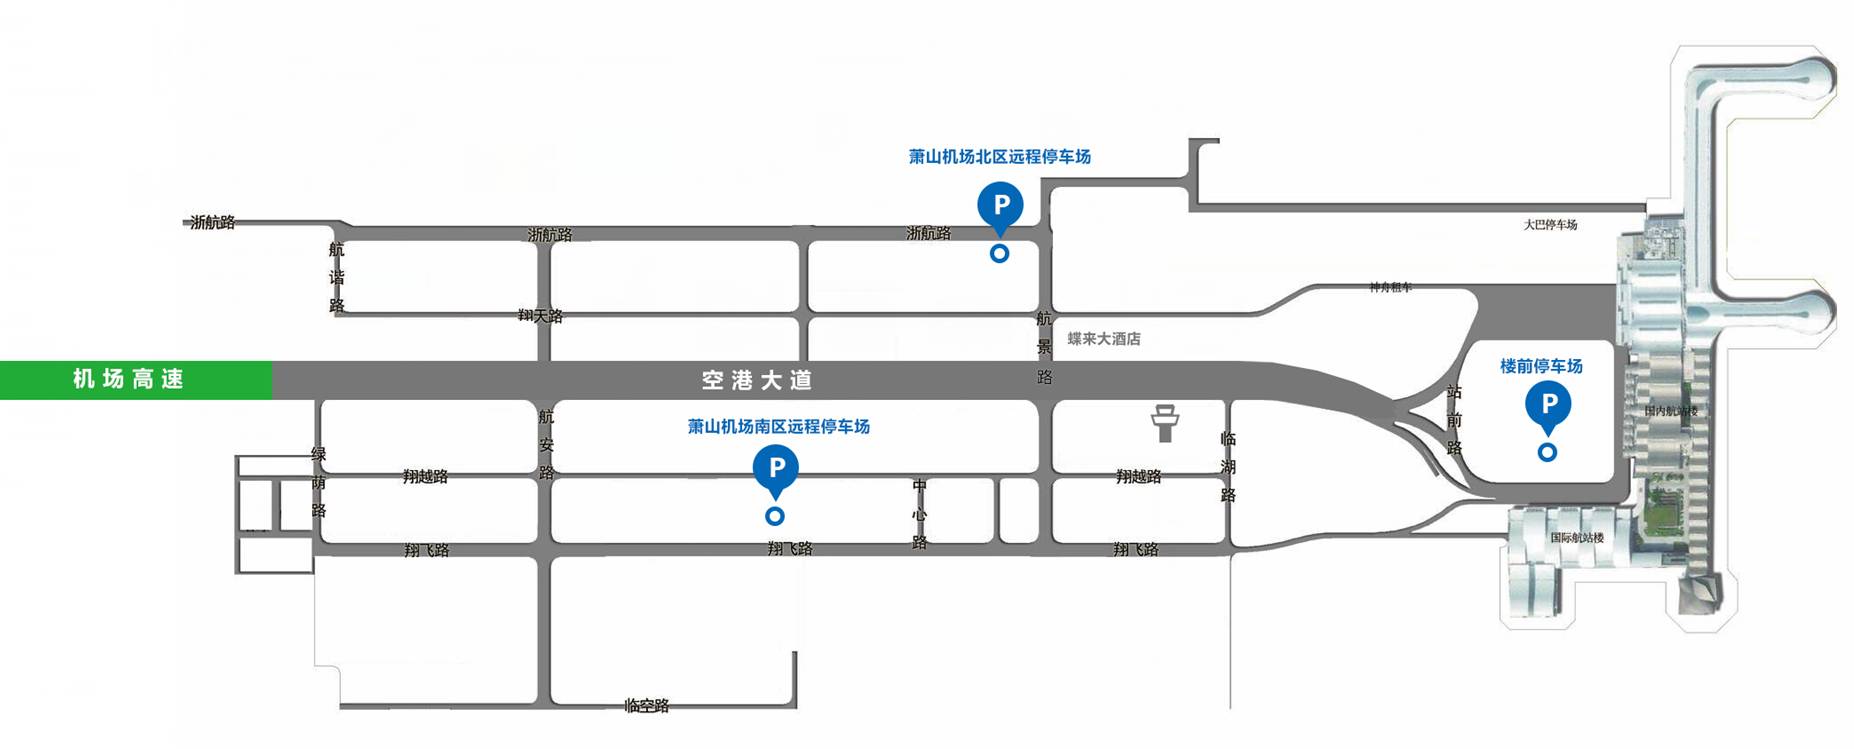 徐州东站停车场示意图 徐州高铁站前停车场怎么进